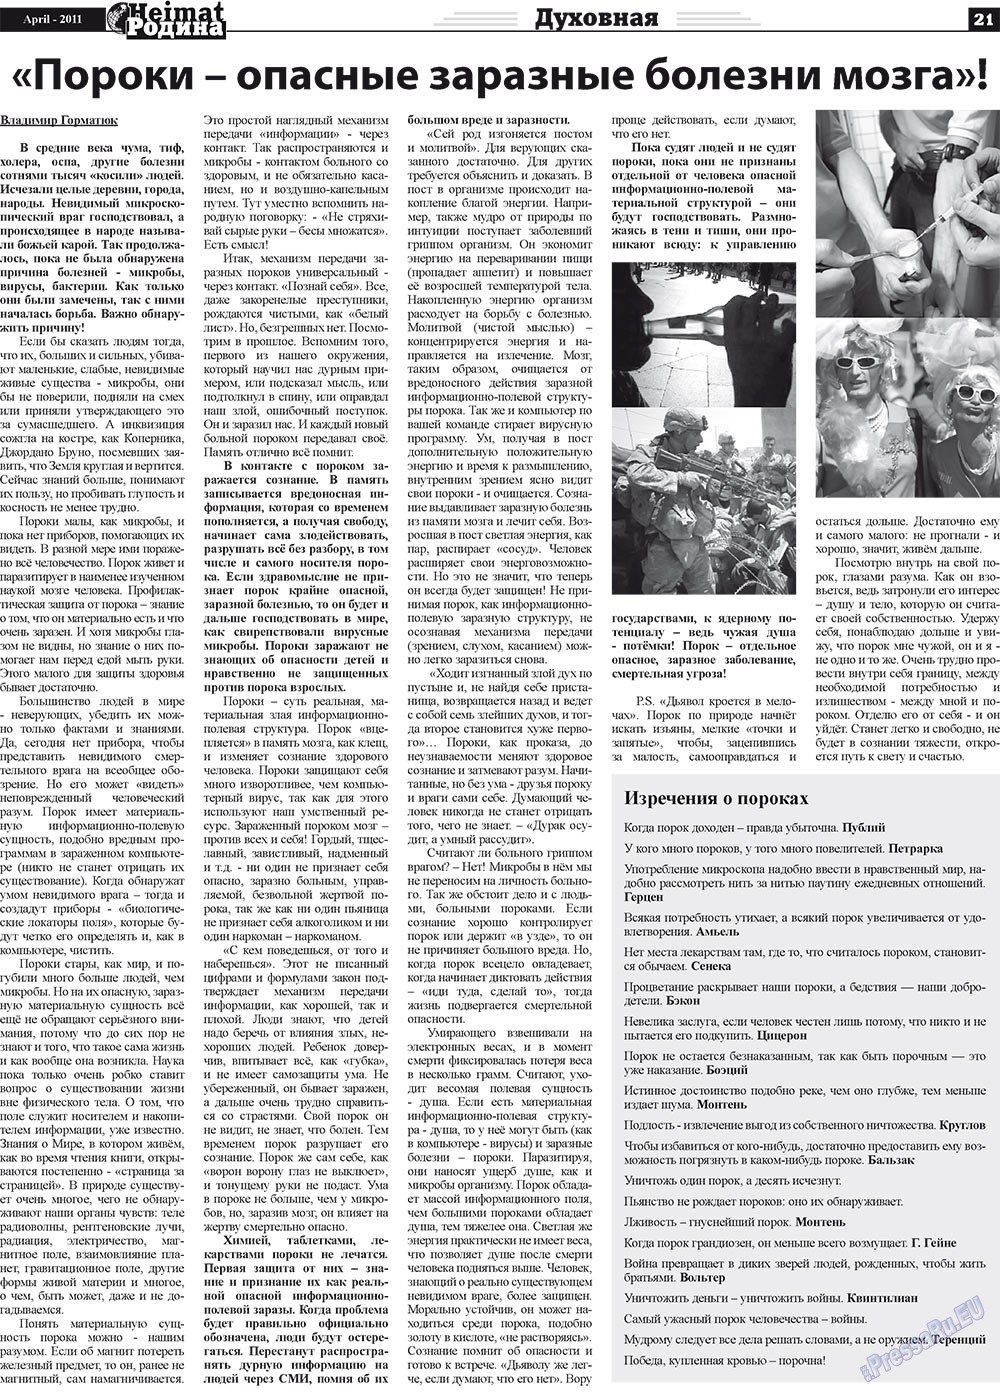 Heimat-Родина (газета). 2011 год, номер 4, стр. 21